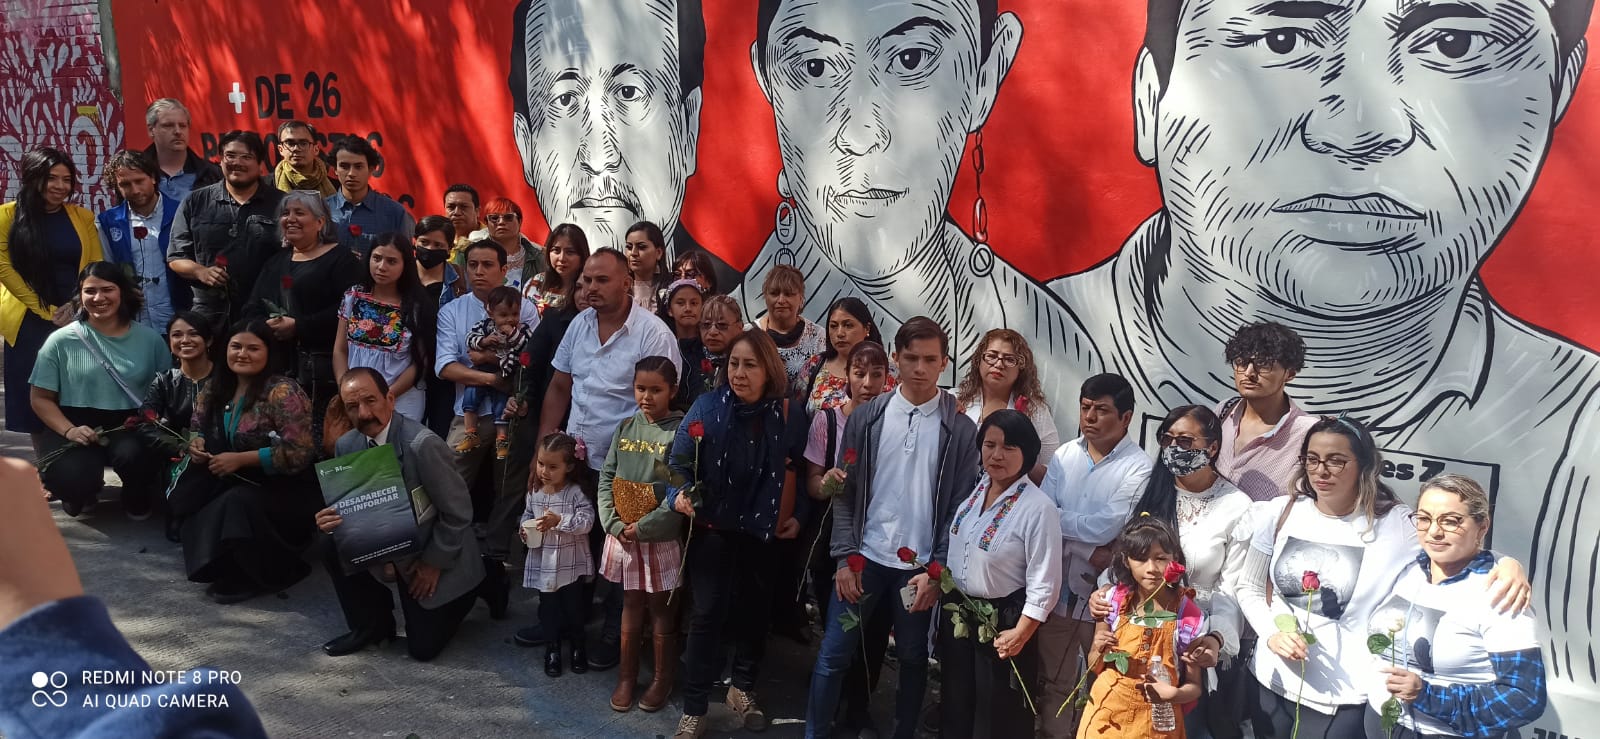 Estado Mexicano, incompetente en búsqueda de desaparecidos hija de periodista